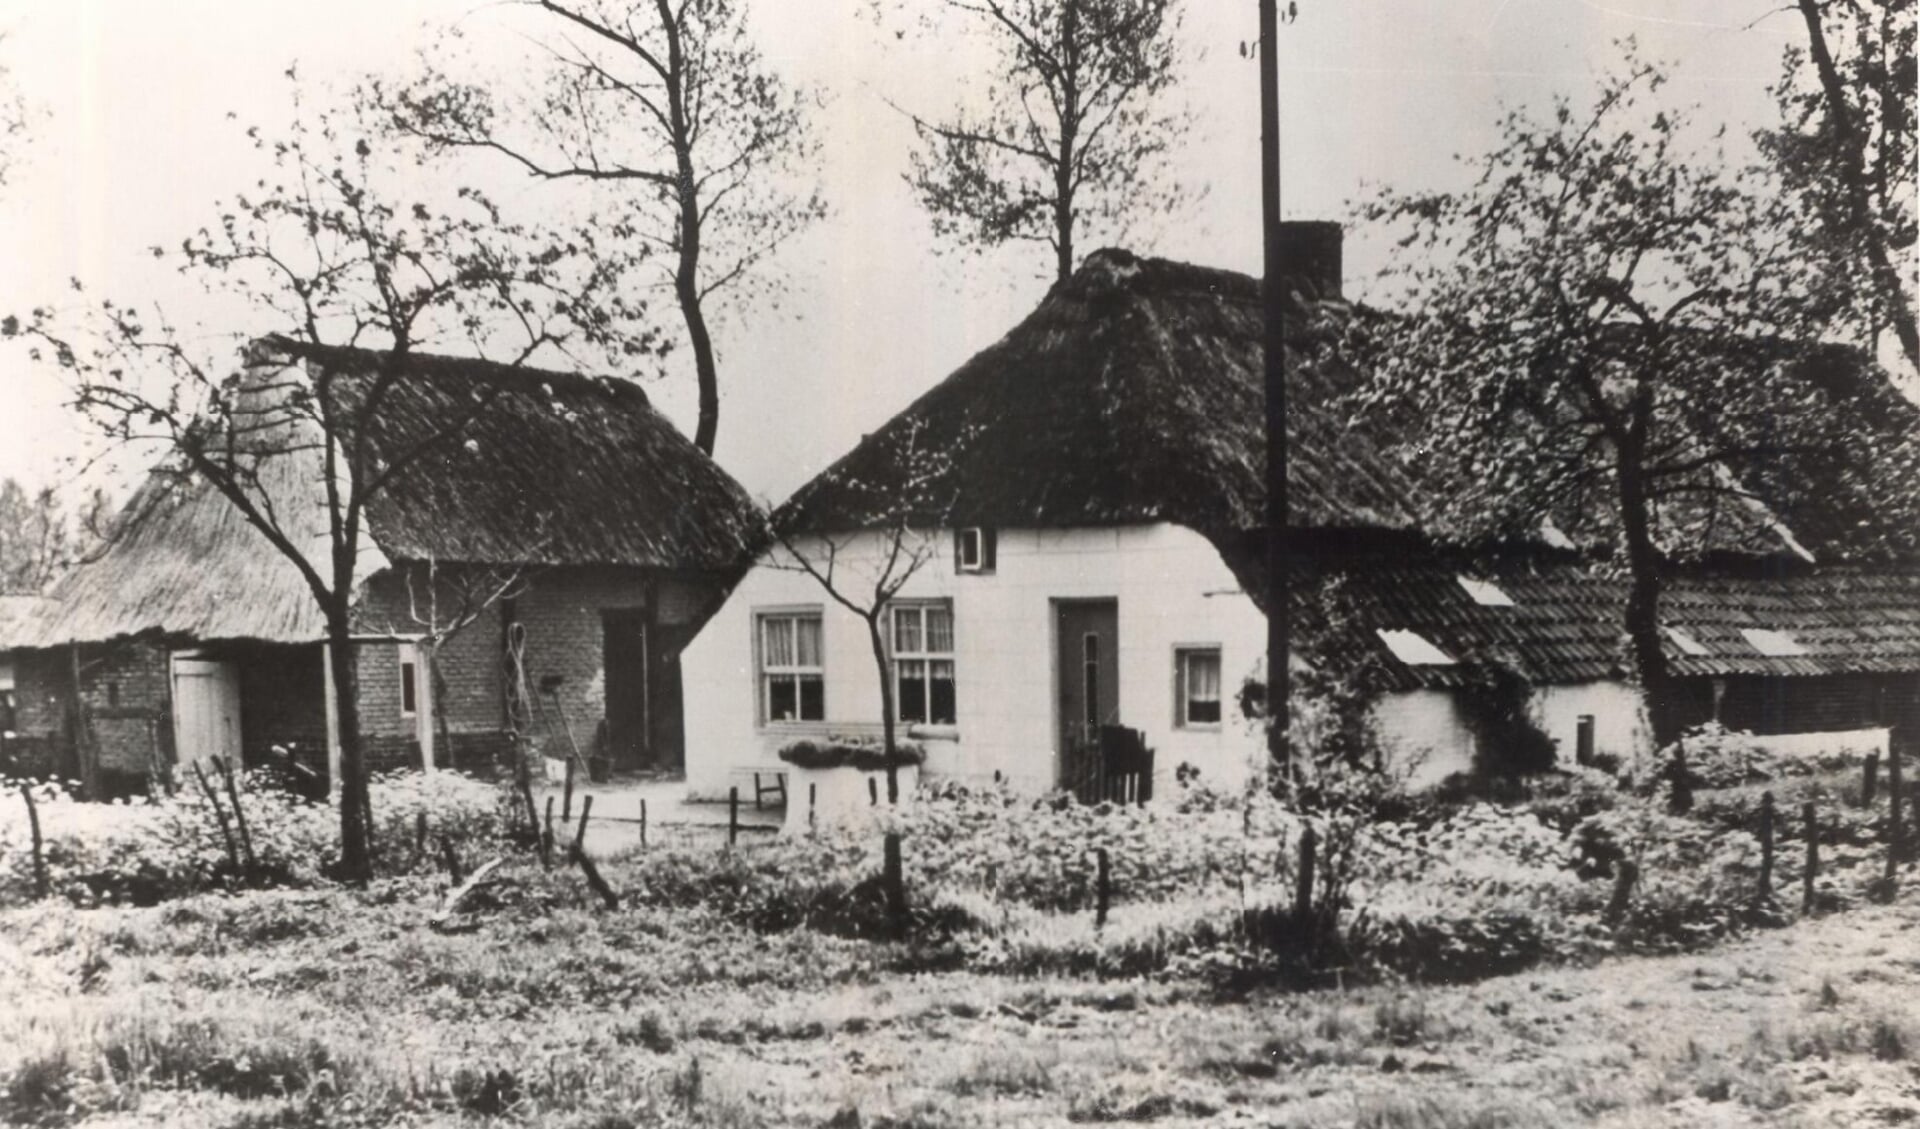 Boerderij ’t Himmelke in Zijtaart was het goed dat Jan Aerts van Doern kocht en waar de Doornhoek haar naam aan ontleende. Het ligt nu pál achter industrieterrein Doornhoek (Foto: BHIC).